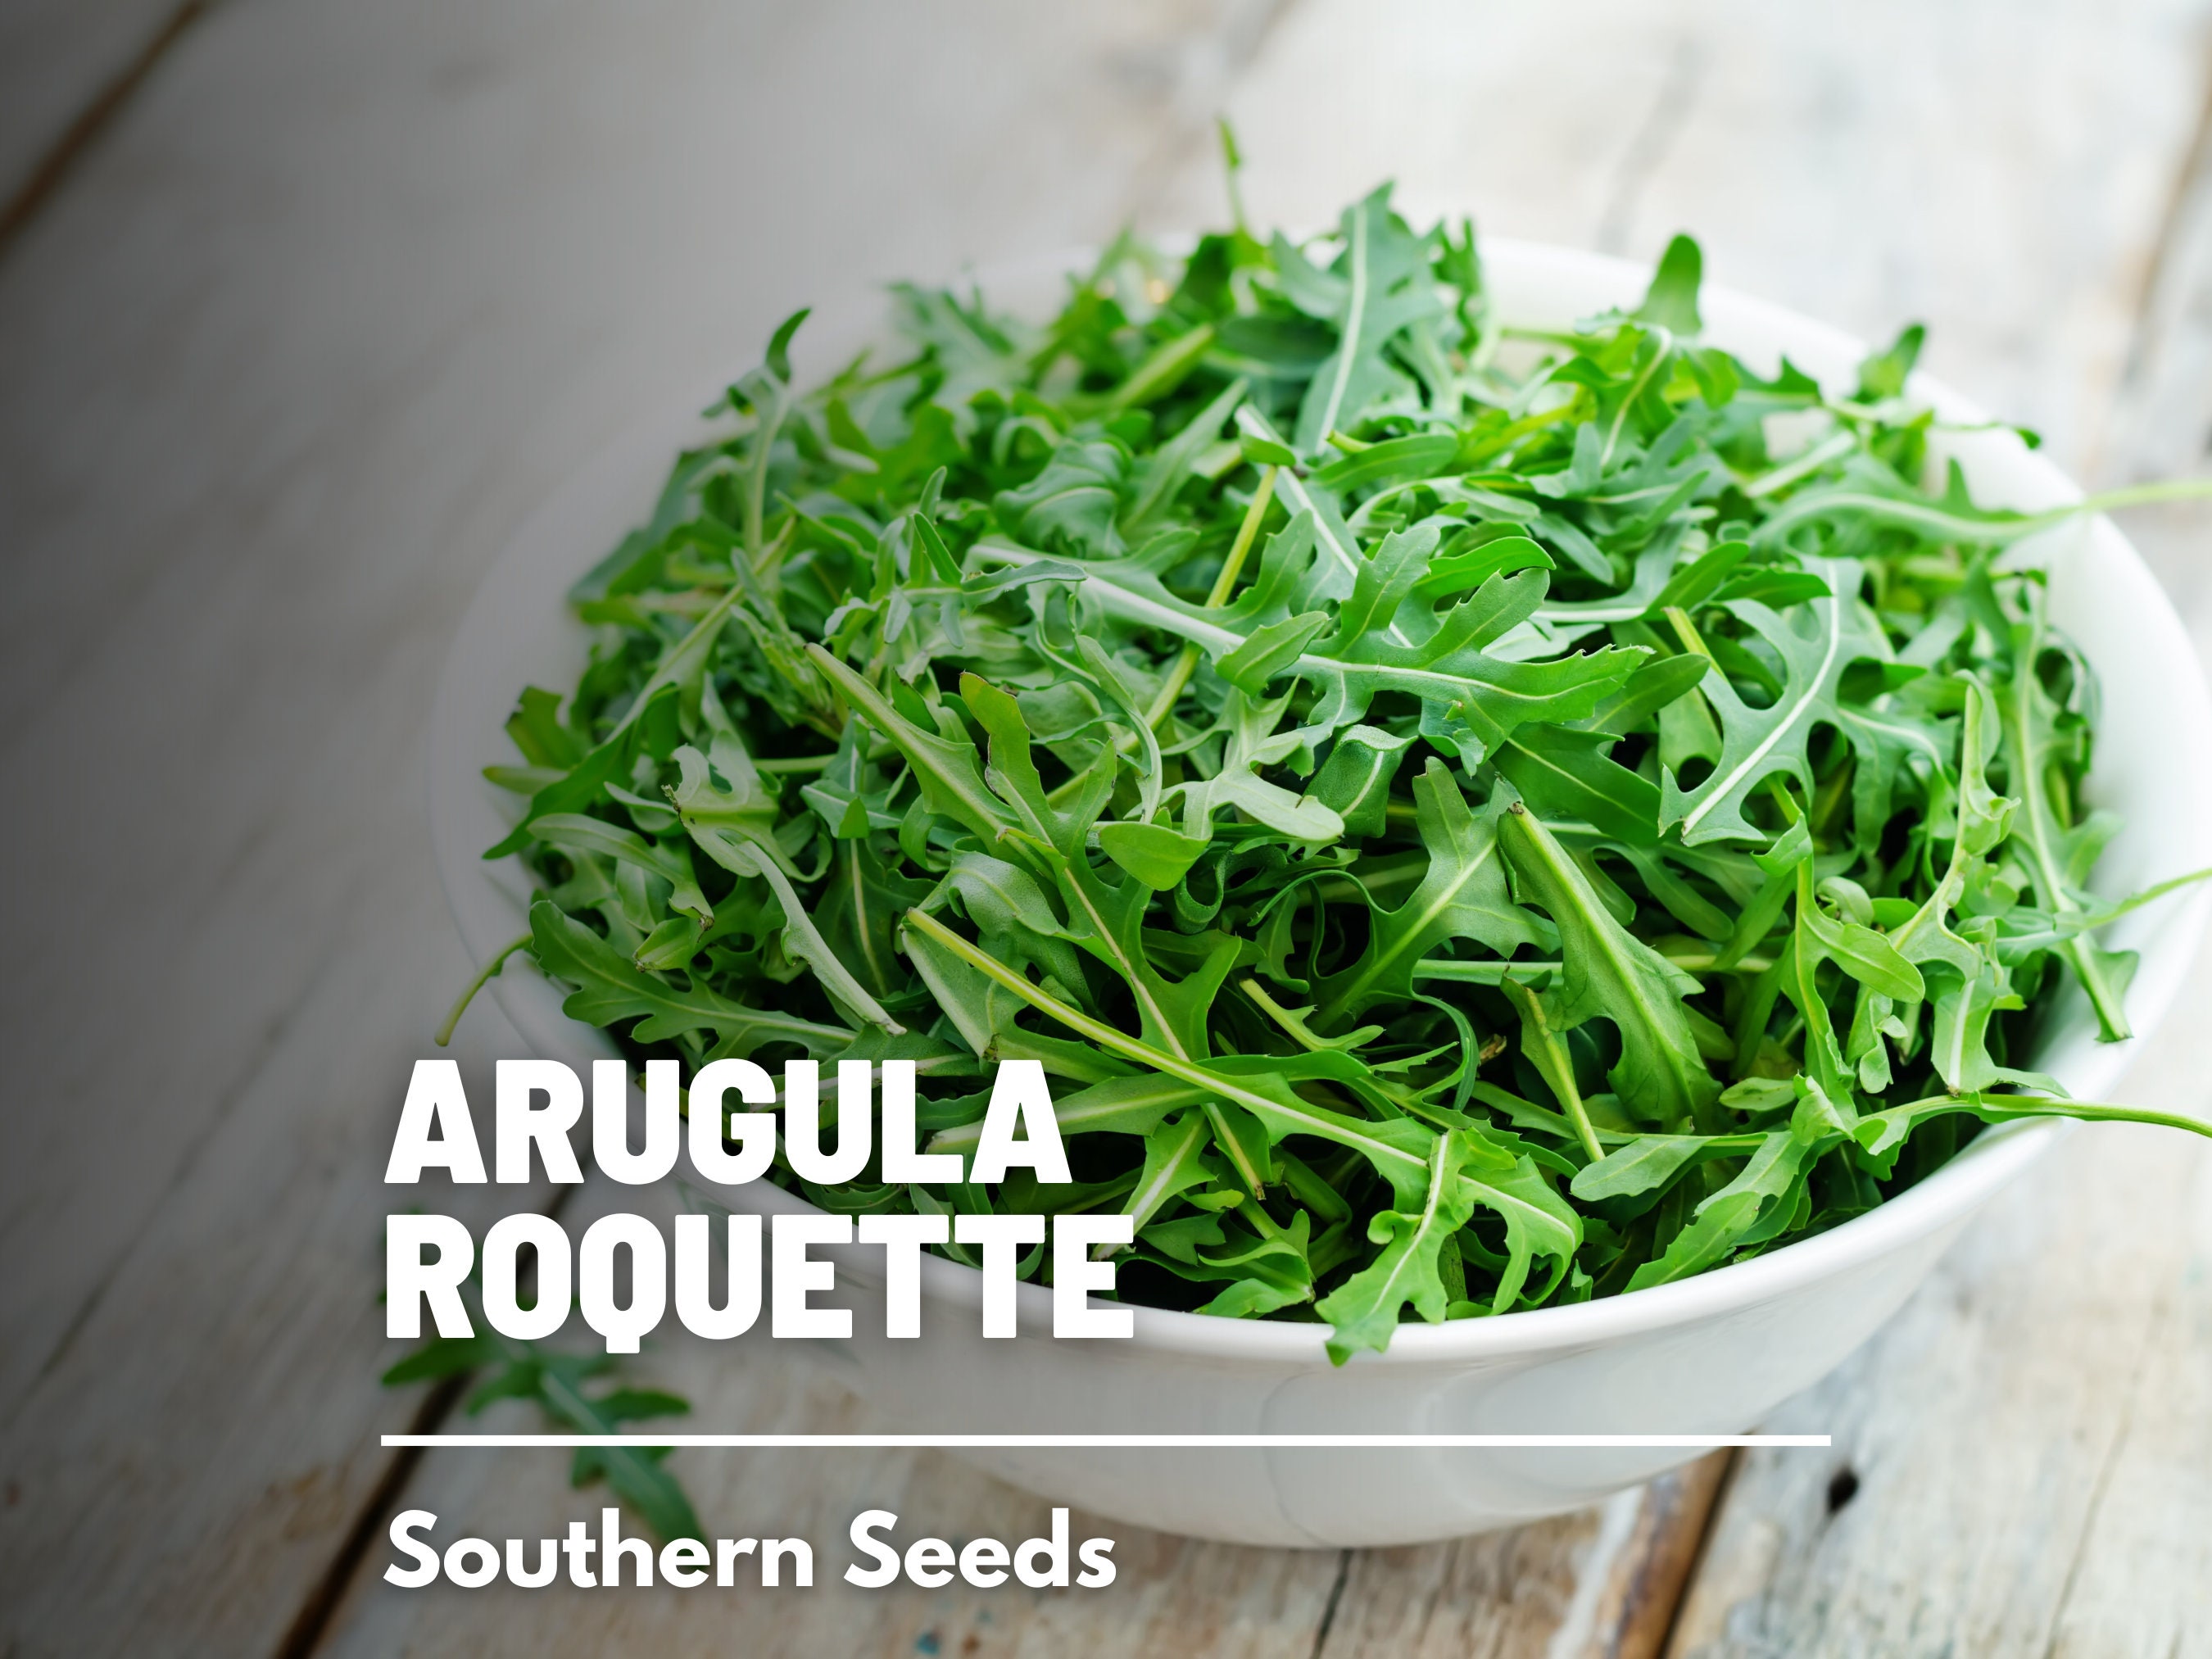  Arugula, Rocket Salad, Roquette, Rucola, Rugula (2000